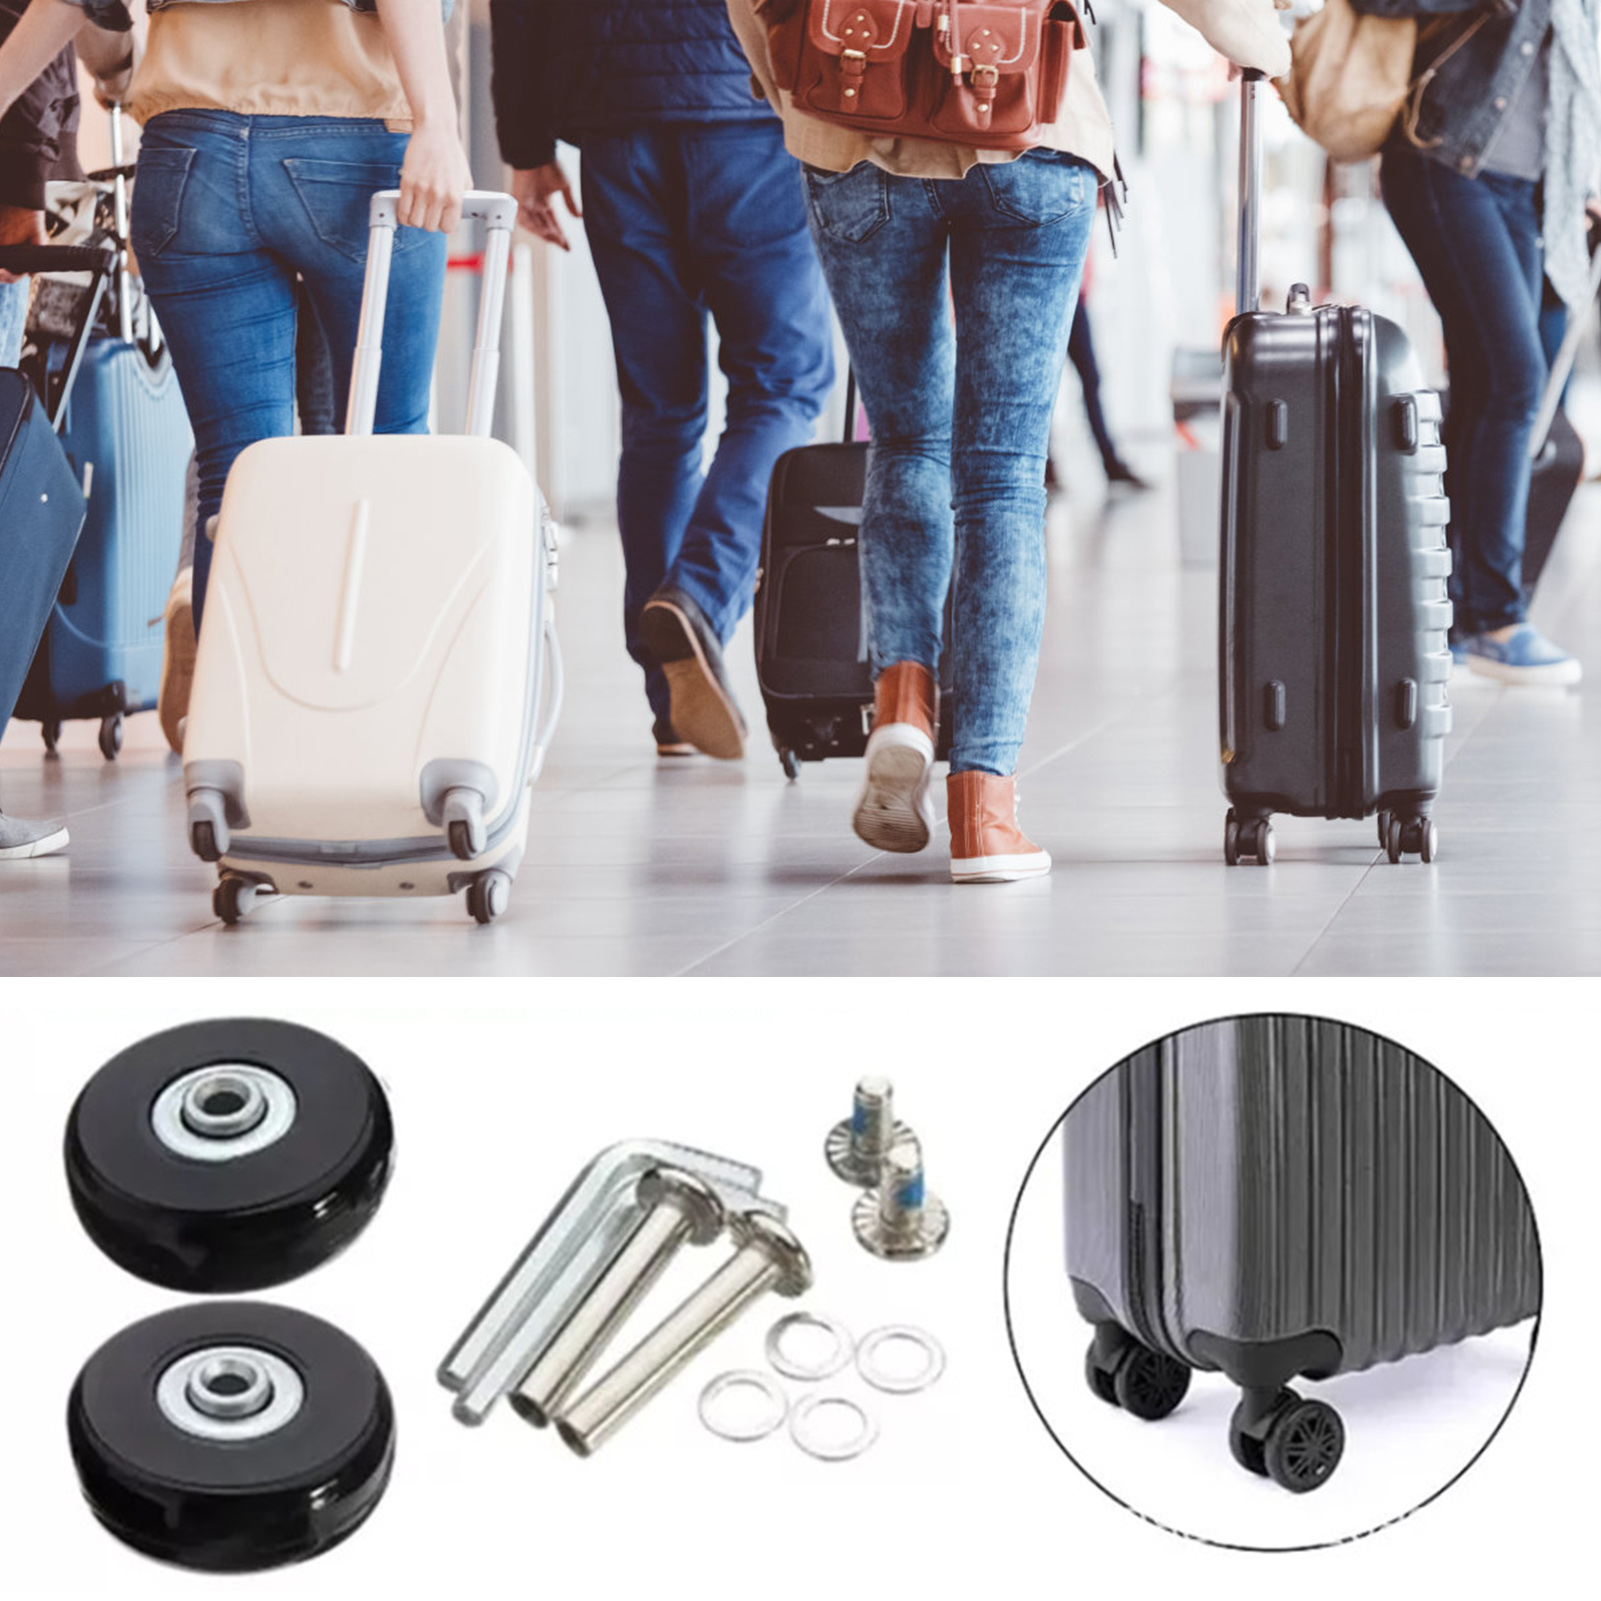 Xianman 4 chiếc vali hành lý bằng cao su bánh xe hành lý thông dụng thay thế cho vali va li có bánh xe